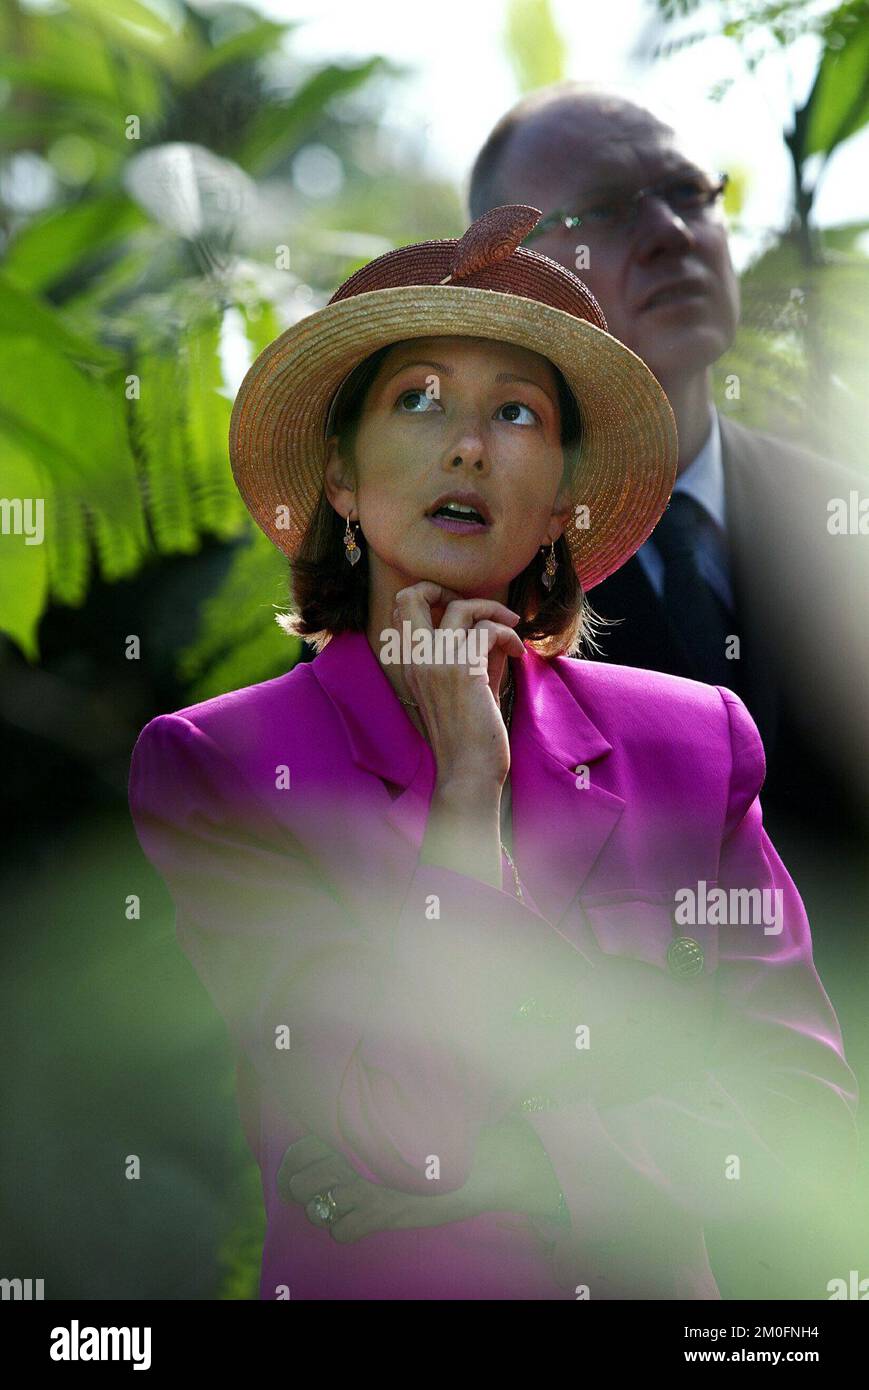 PA PHOTOS / POLFOTO - UK USE ONLY : principessa Alexandra di Danimarca visitando la foresta pluviale di Randers dove ha aperto una nuova sezione, la foresta pluviale sudamericana. La principessa era vestita con un bel vestito rosa e non sembrava essere disturbata dal clima tropicale. Foto Stock